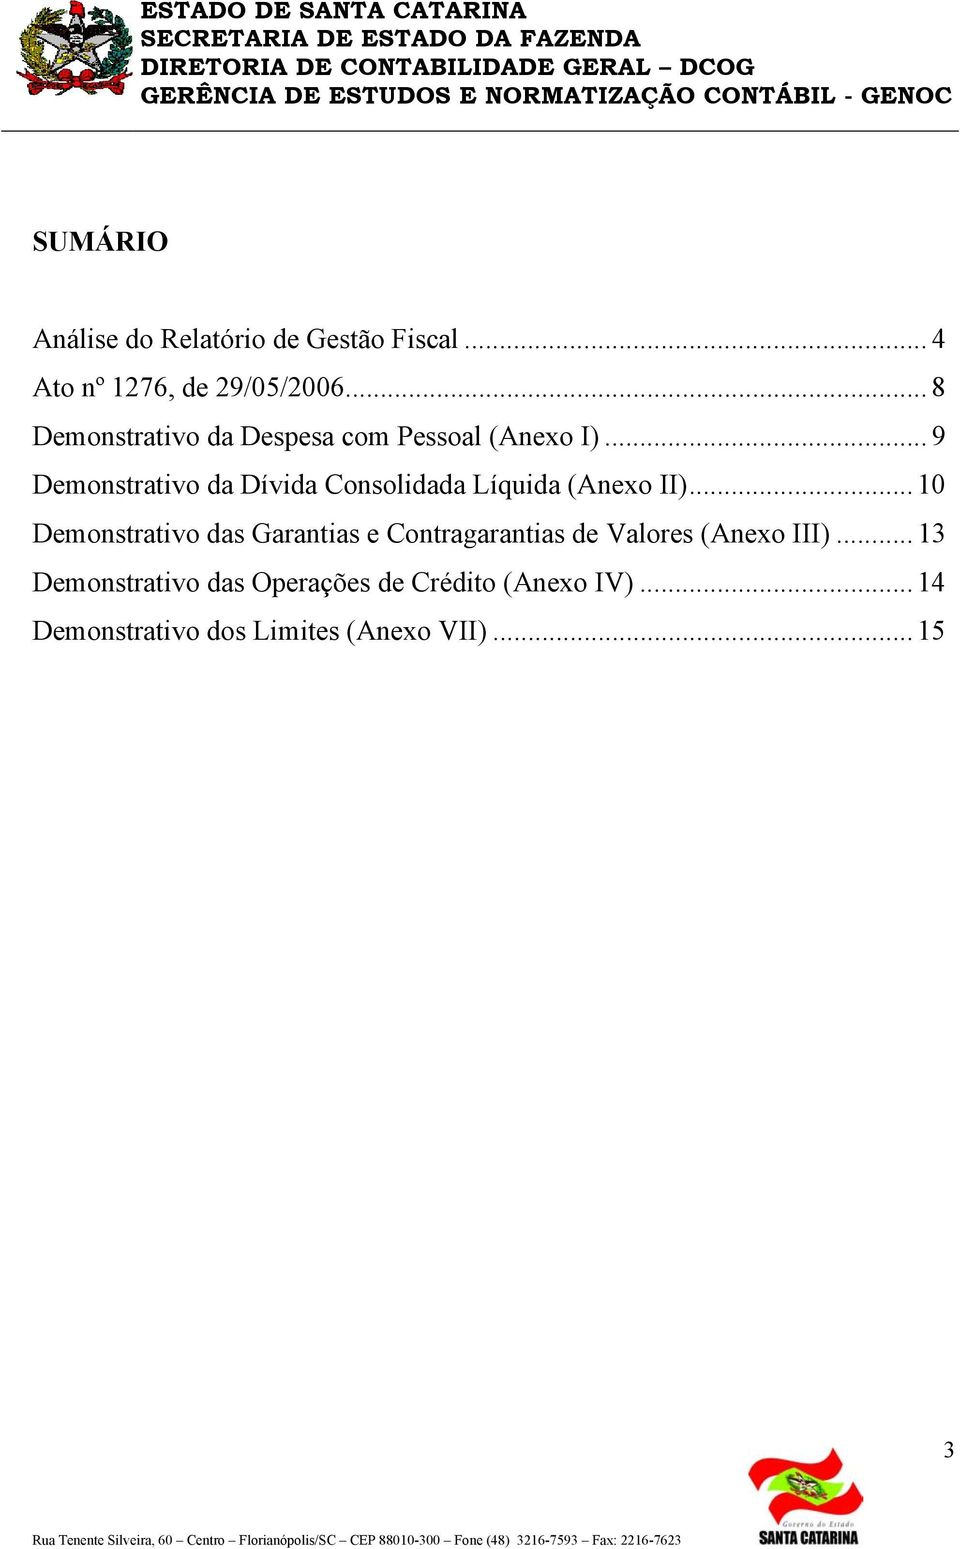 .. 9 Demonstrativo da Dívida Consolidada Líquida (Anexo II)... 10 Demonstrativo das Garantias e Contragarantias de Valores (Anexo III).